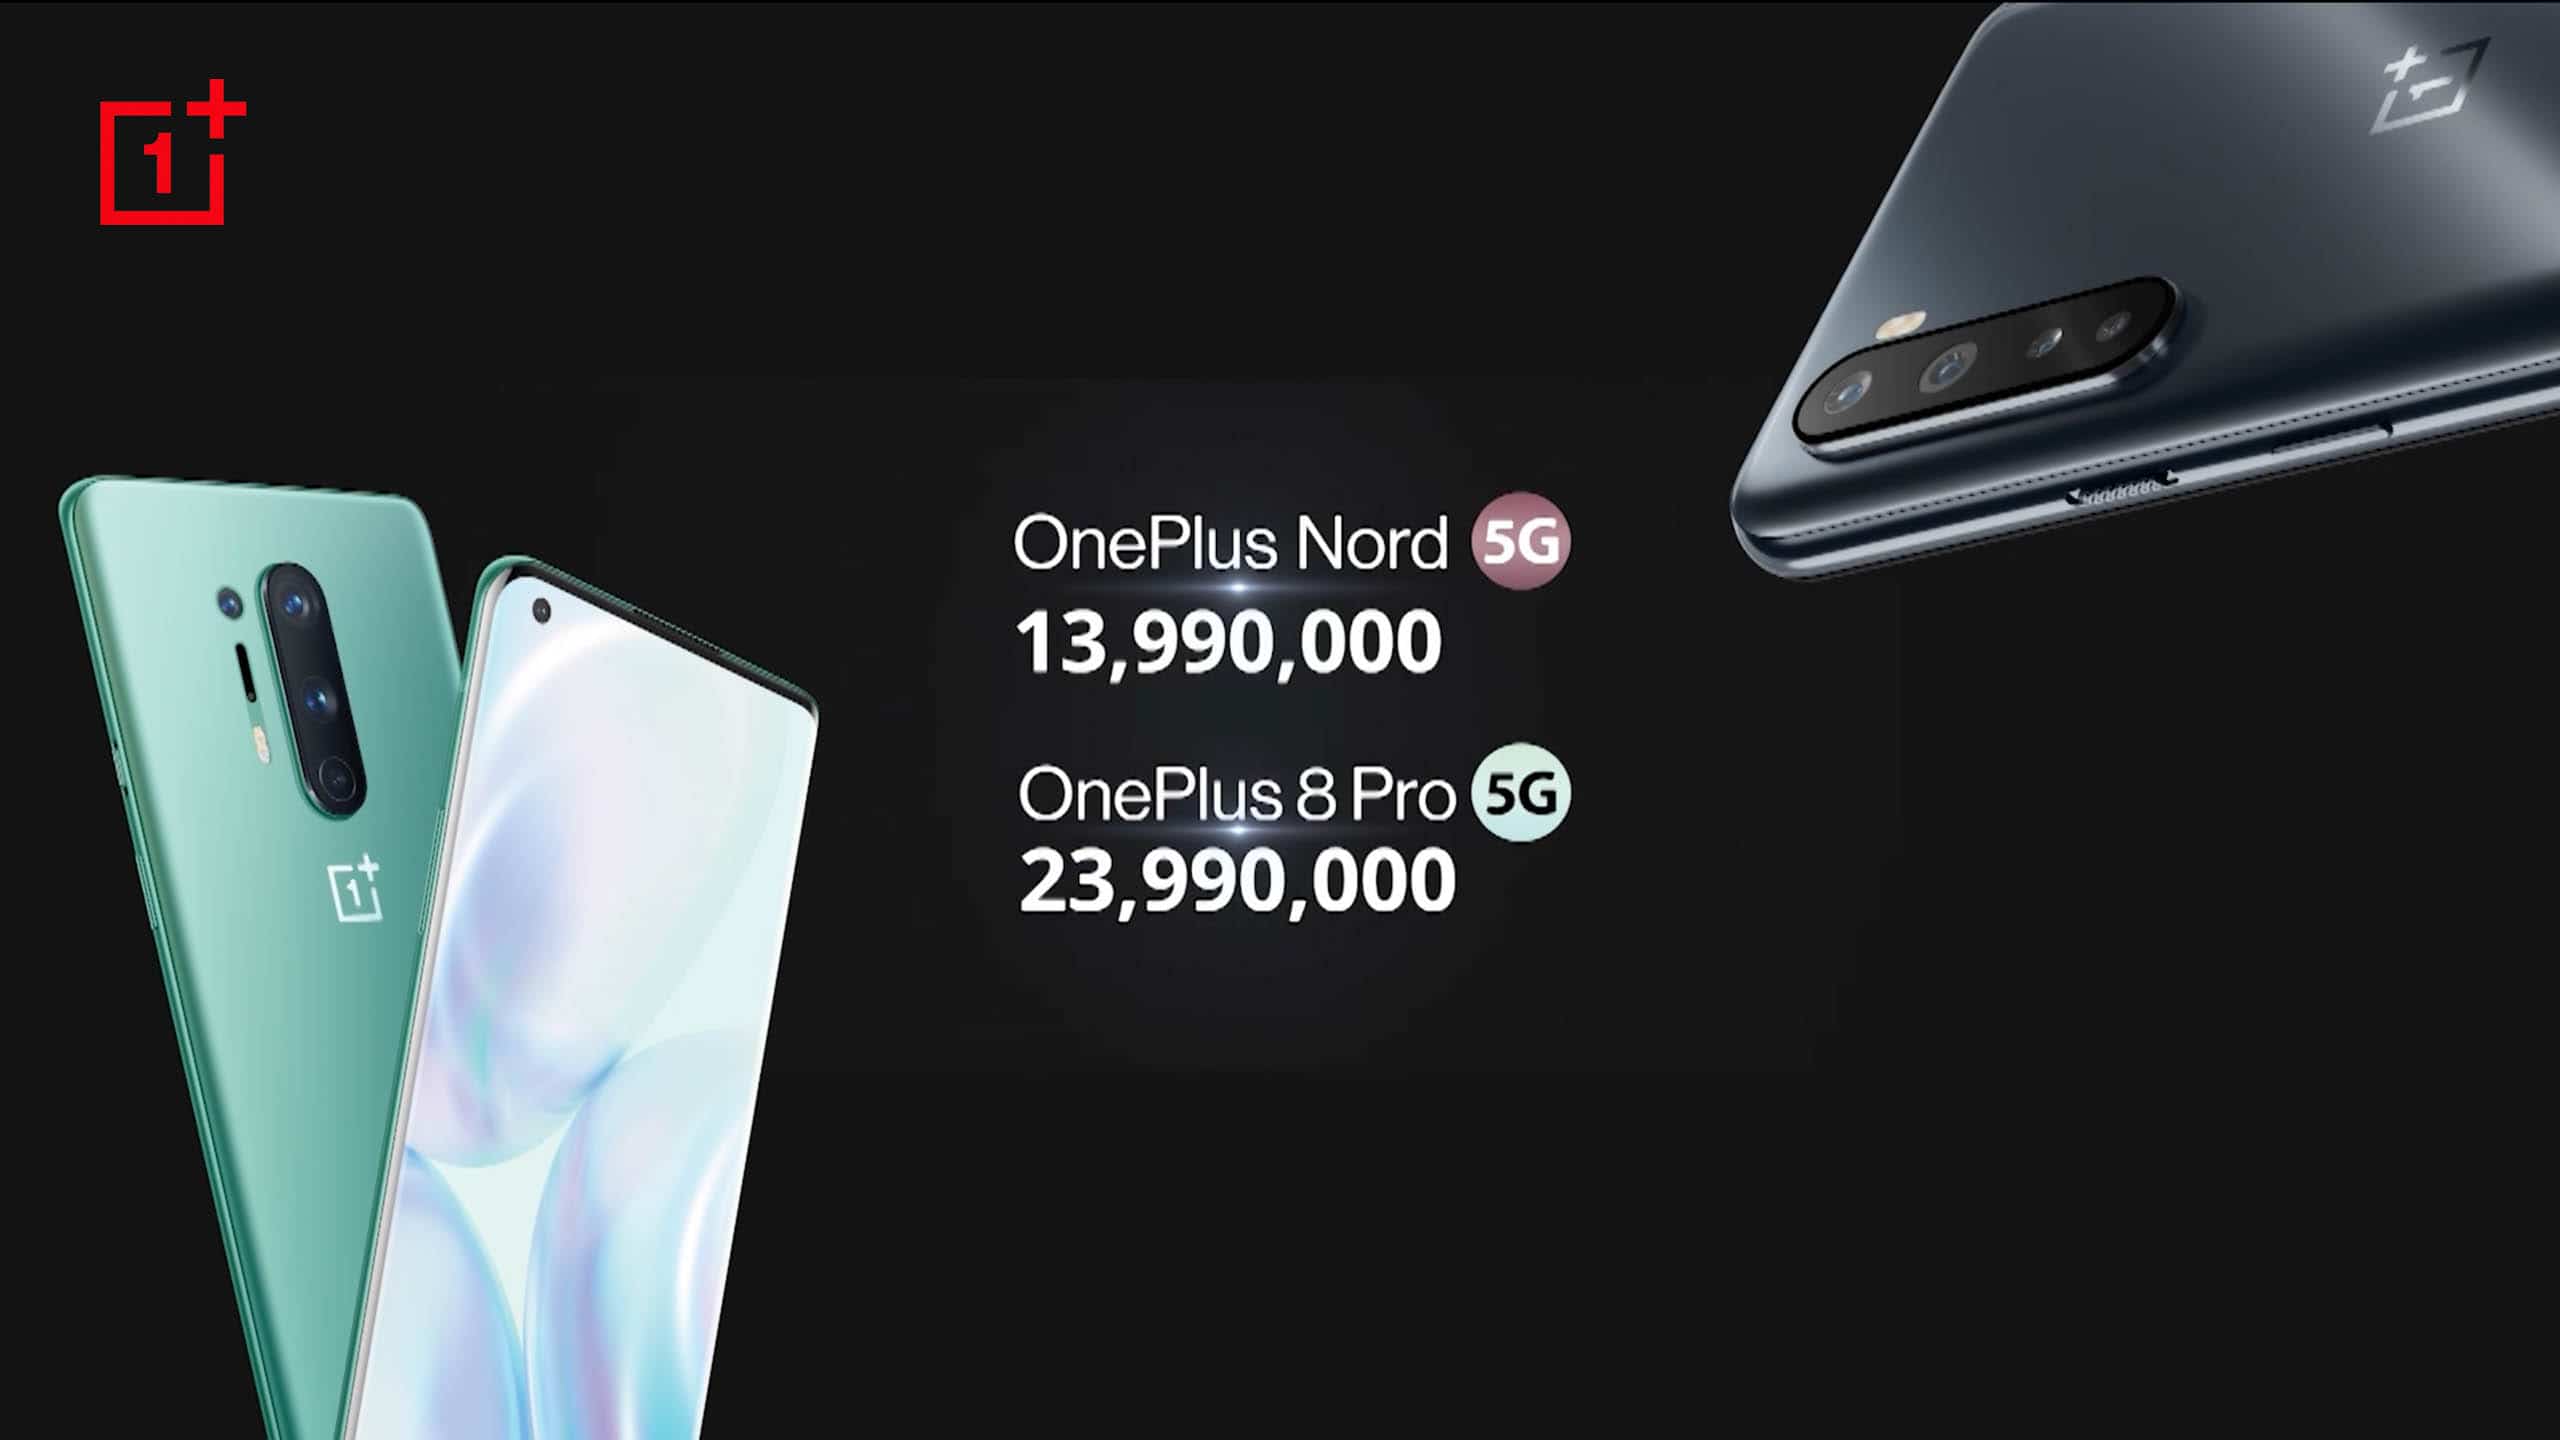 Cộng đồng công nghệ nói gì về OnePlus sau màn ra mắt ấn tượng tại Việt Nam